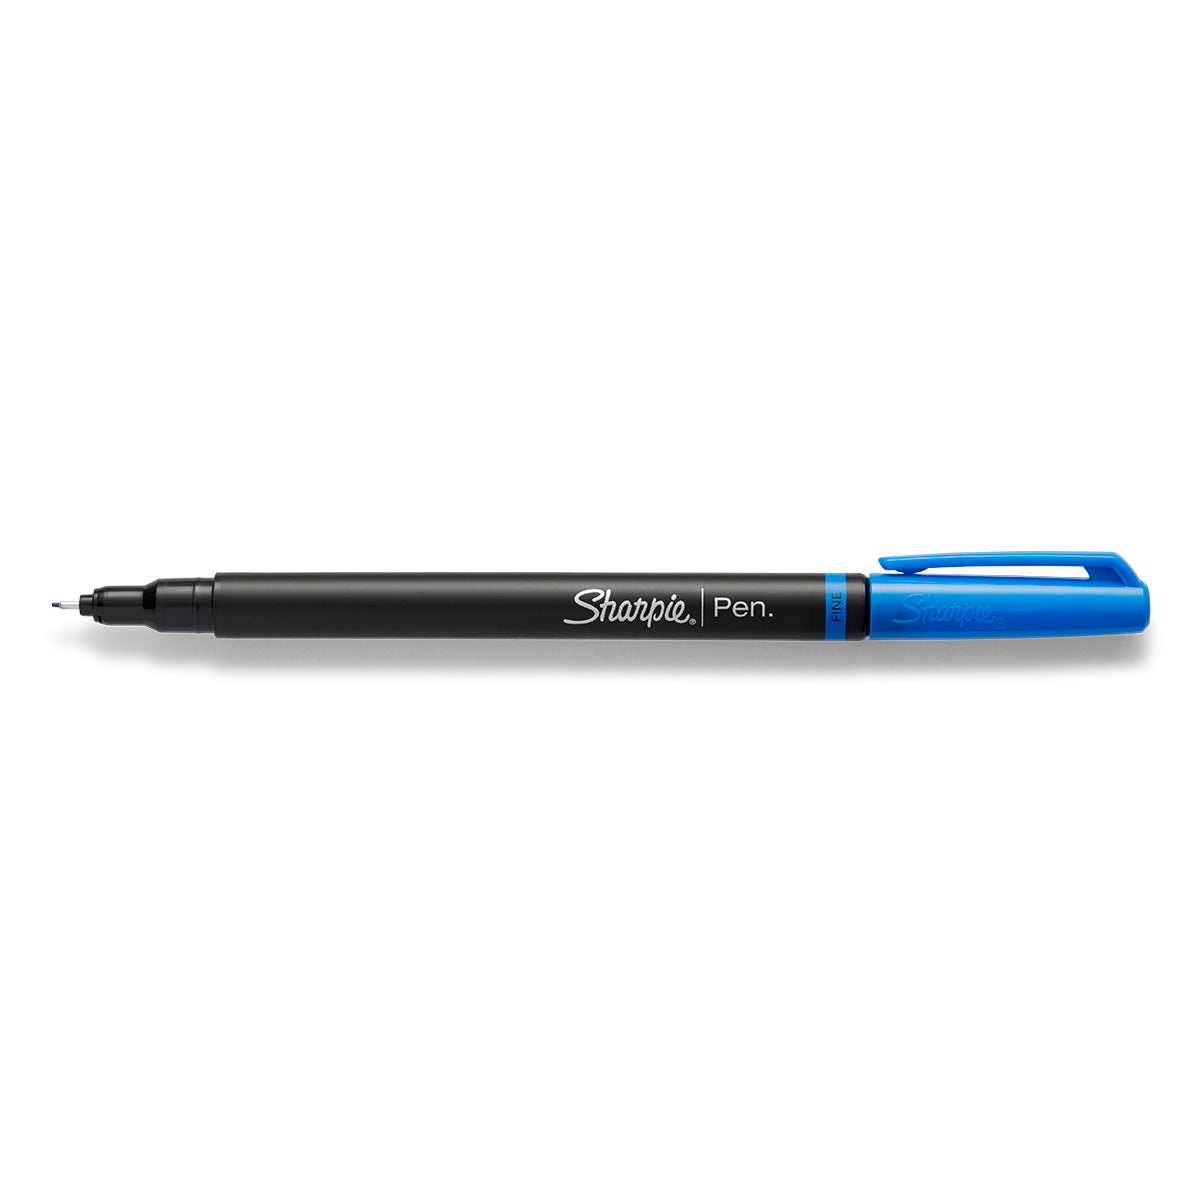 https://www.pensandpencils.net/cdn/shop/products/Sharpie-pen-blue-fine-open.jpg?v=1538030156